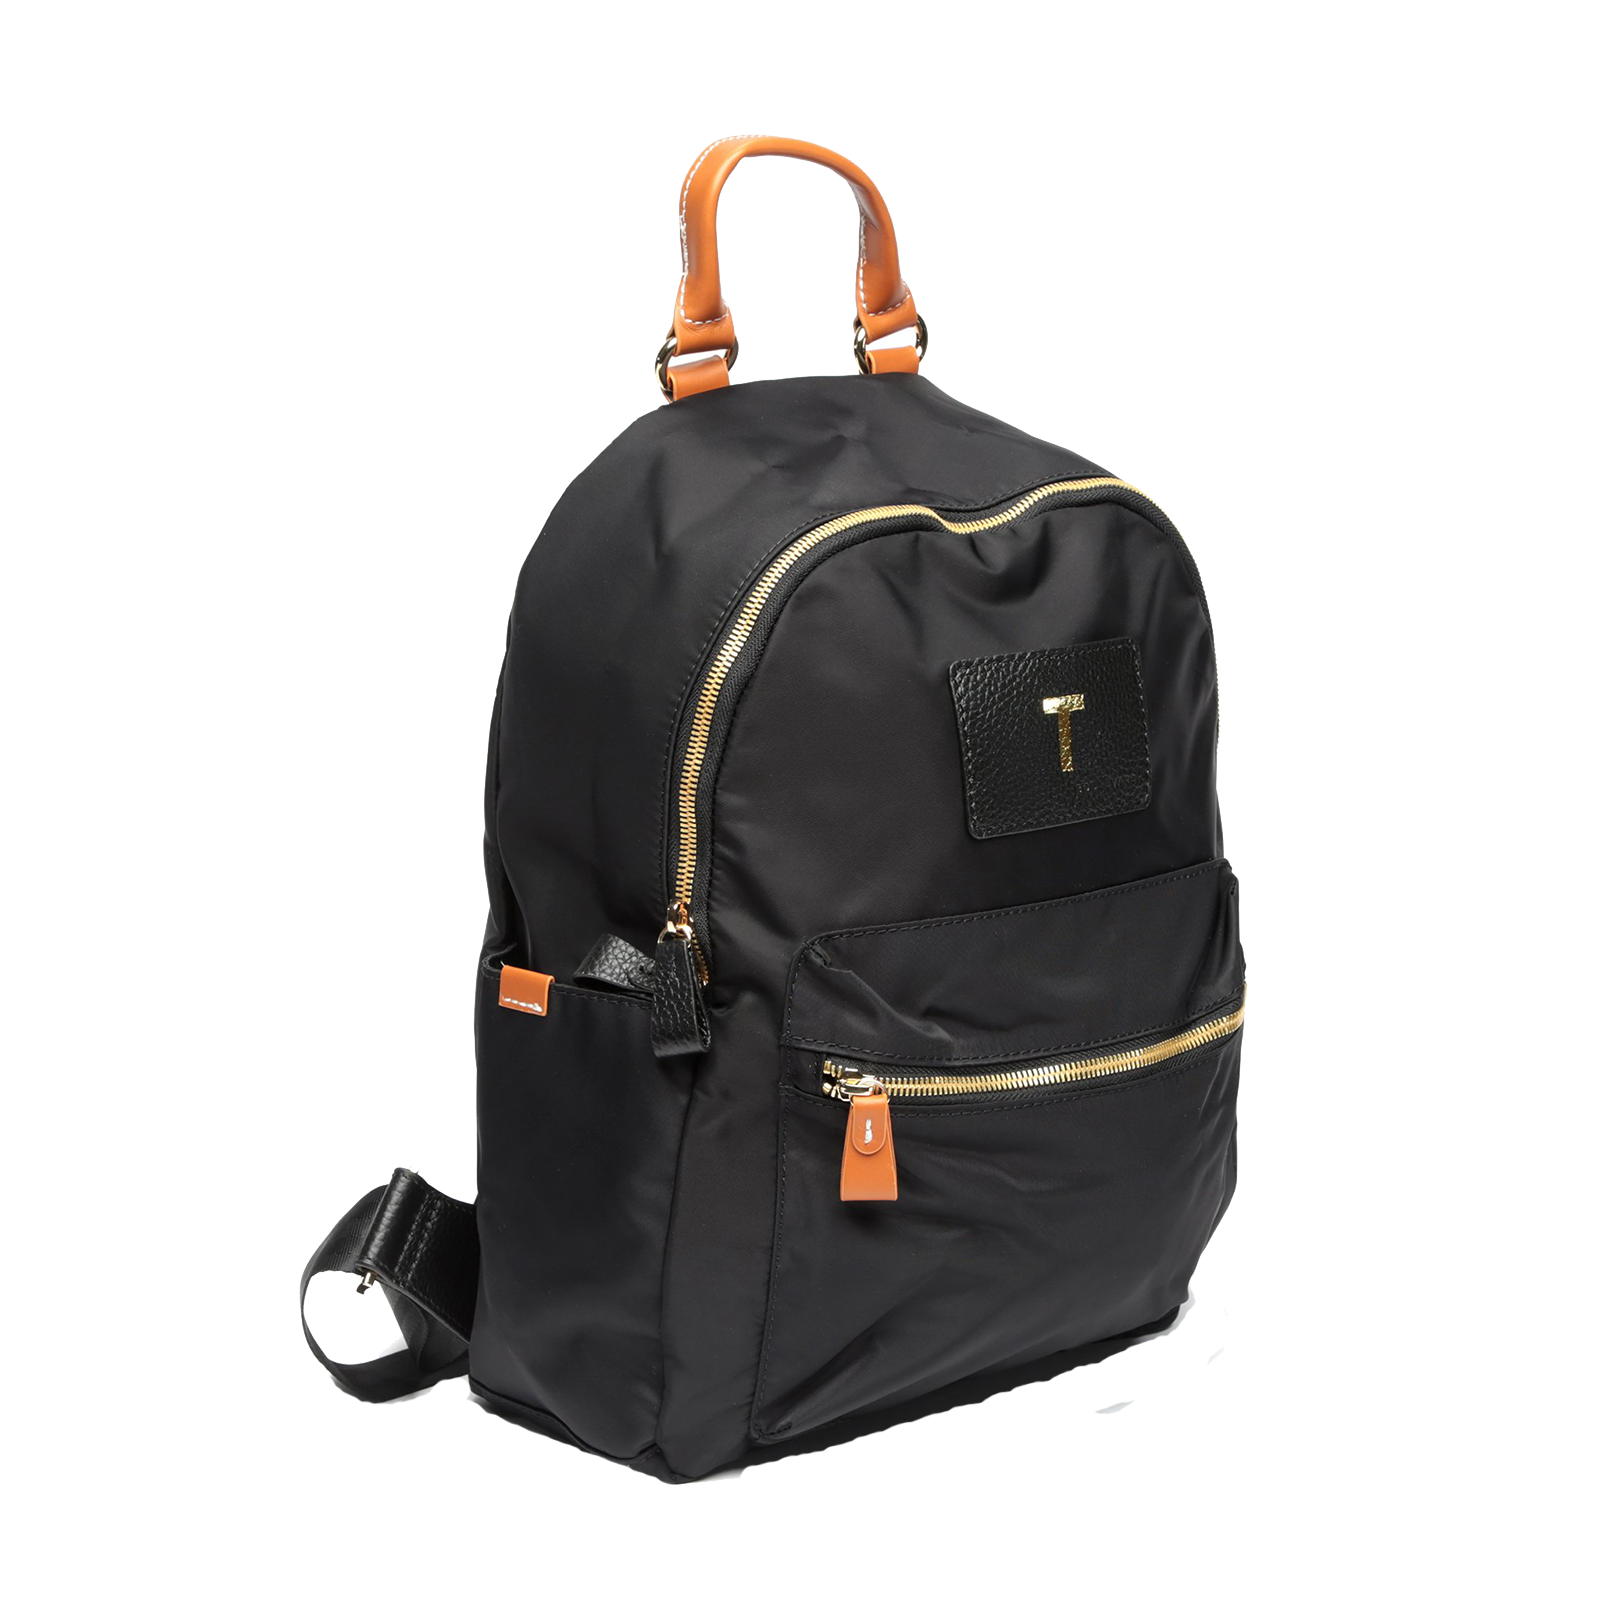 Brandy Nylon Backpack